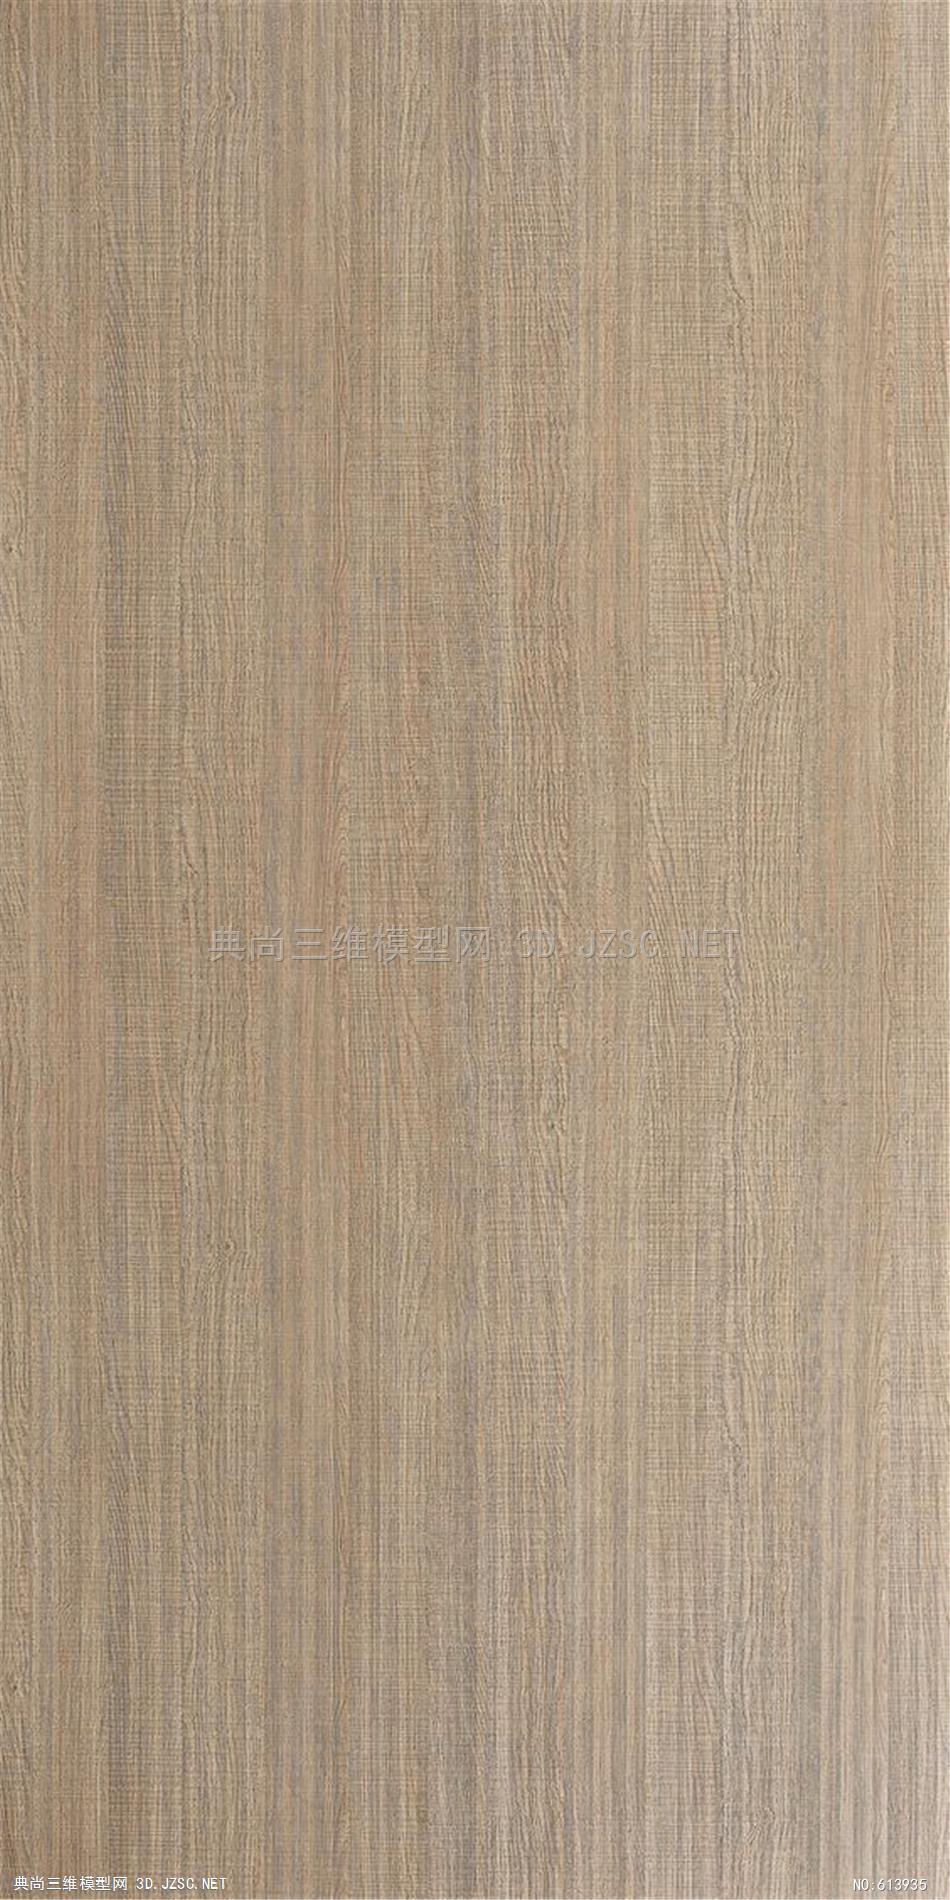 木饰面 木纹 木材  高清材质贴图 (199)